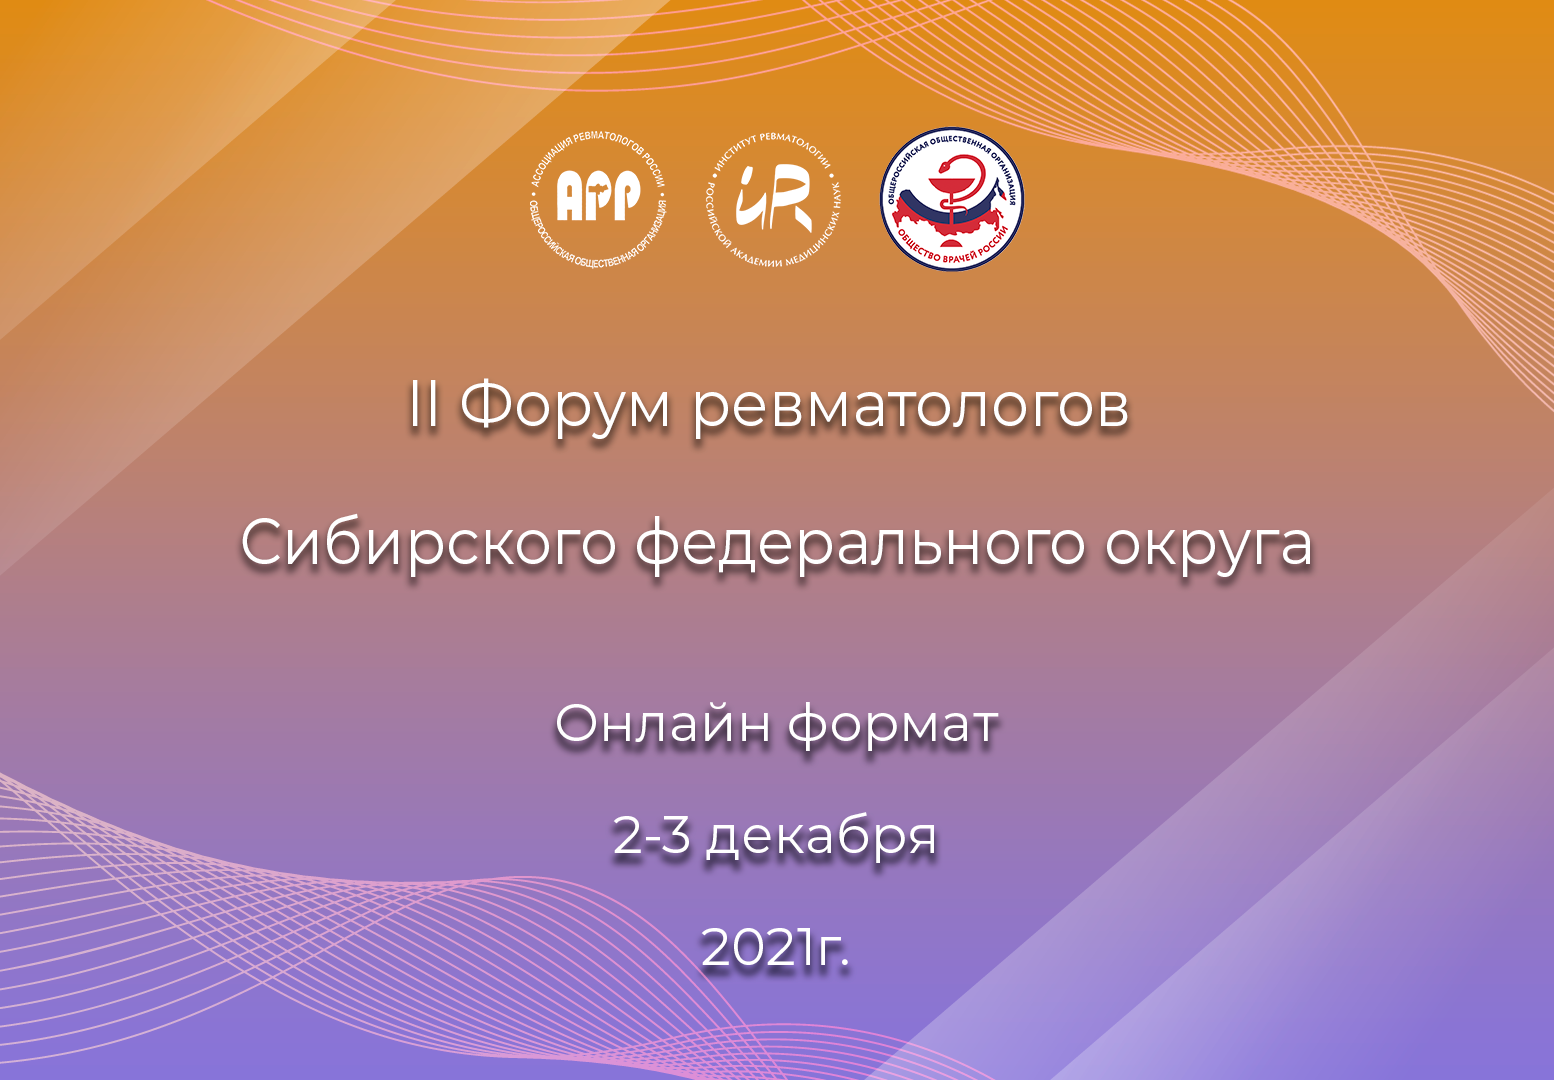 II Форум ревматологов Сибирского федерального округа в онлайн формате